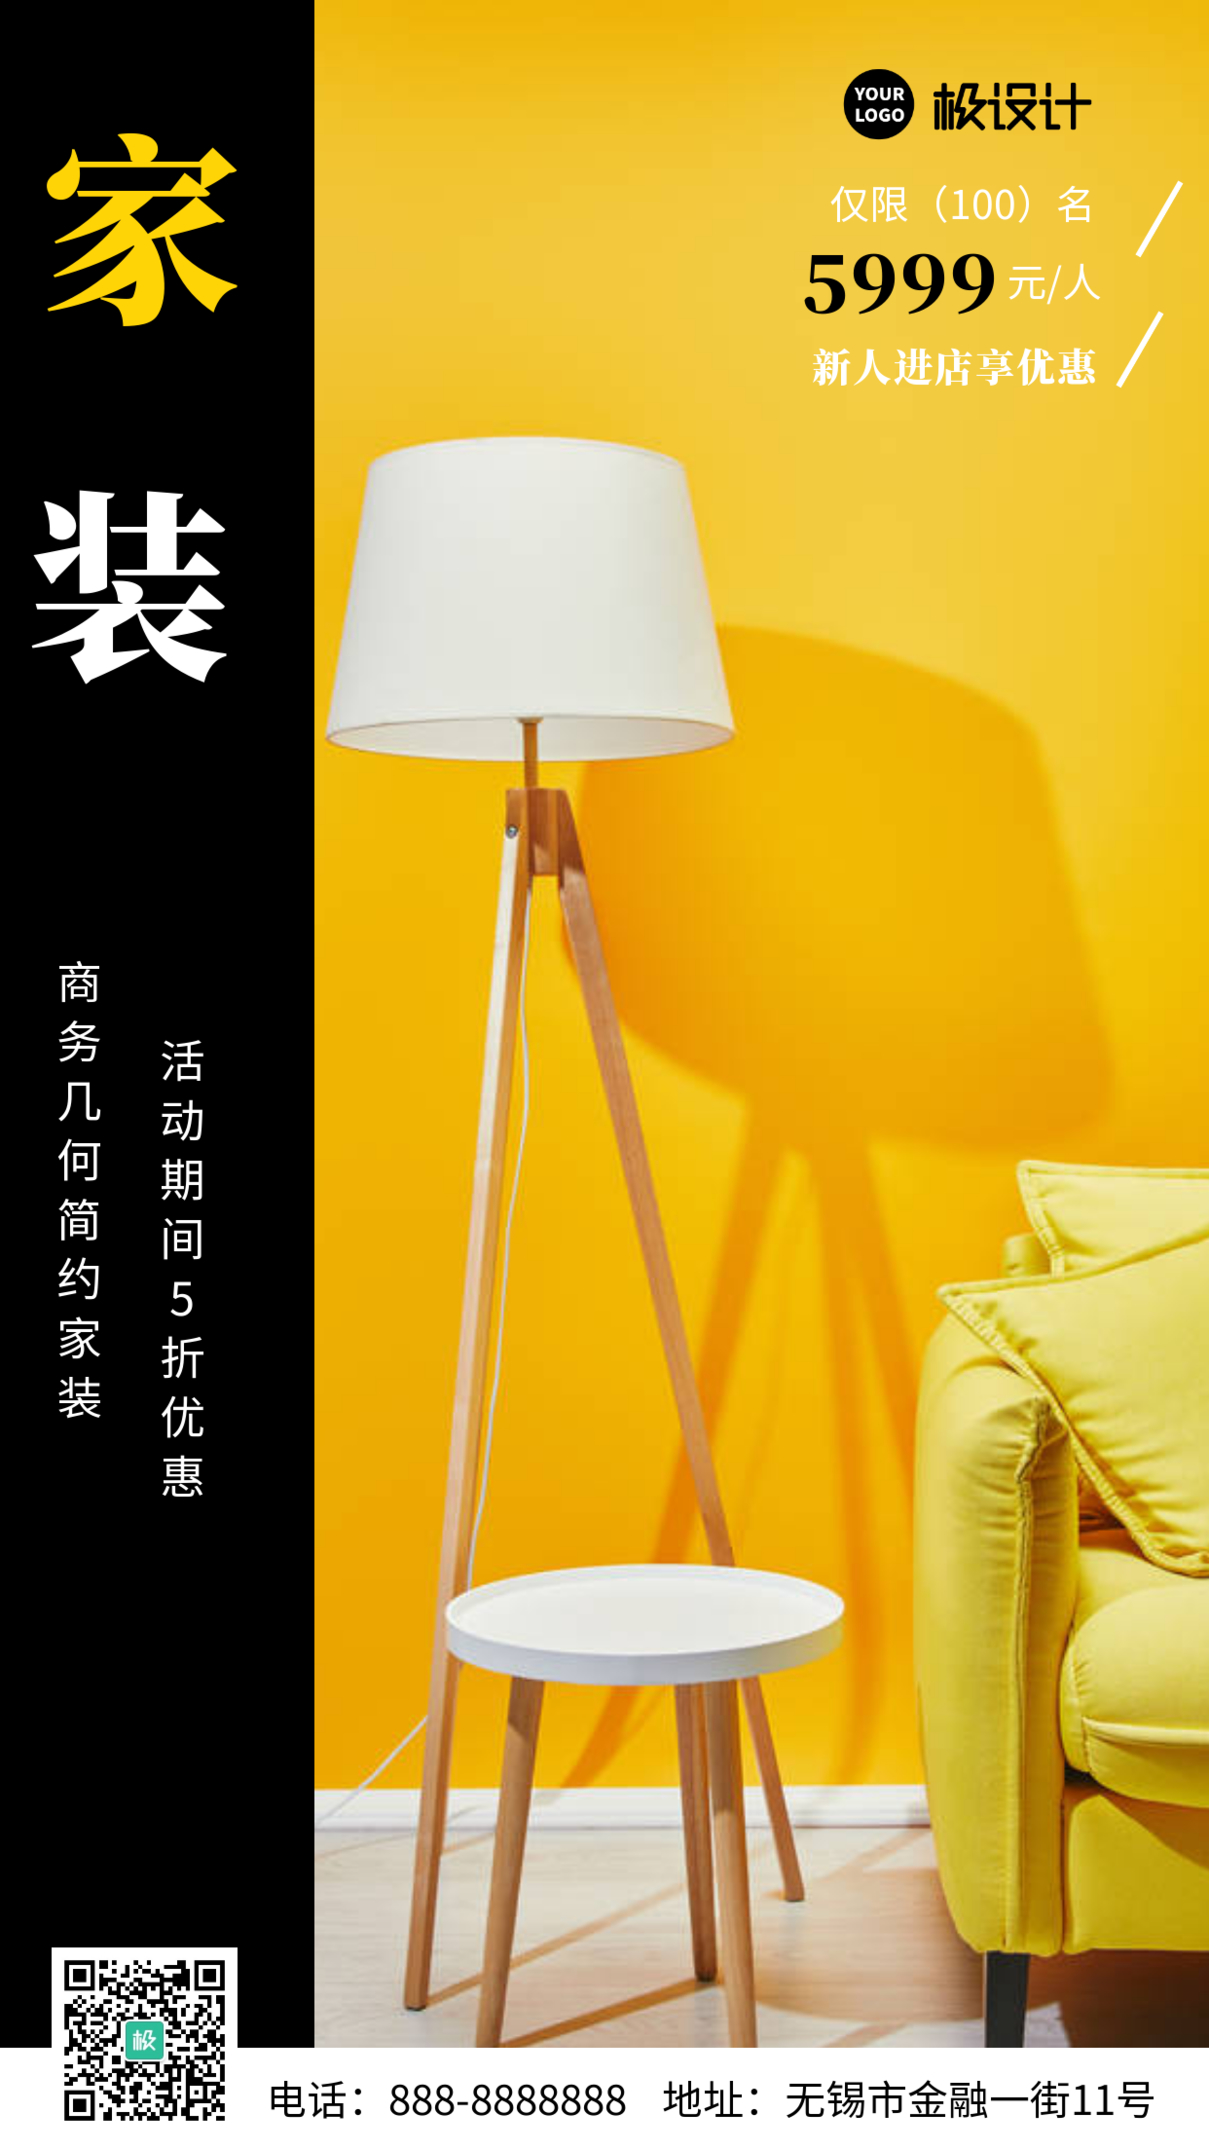 黄色几何简约家装大气宣传营销海报